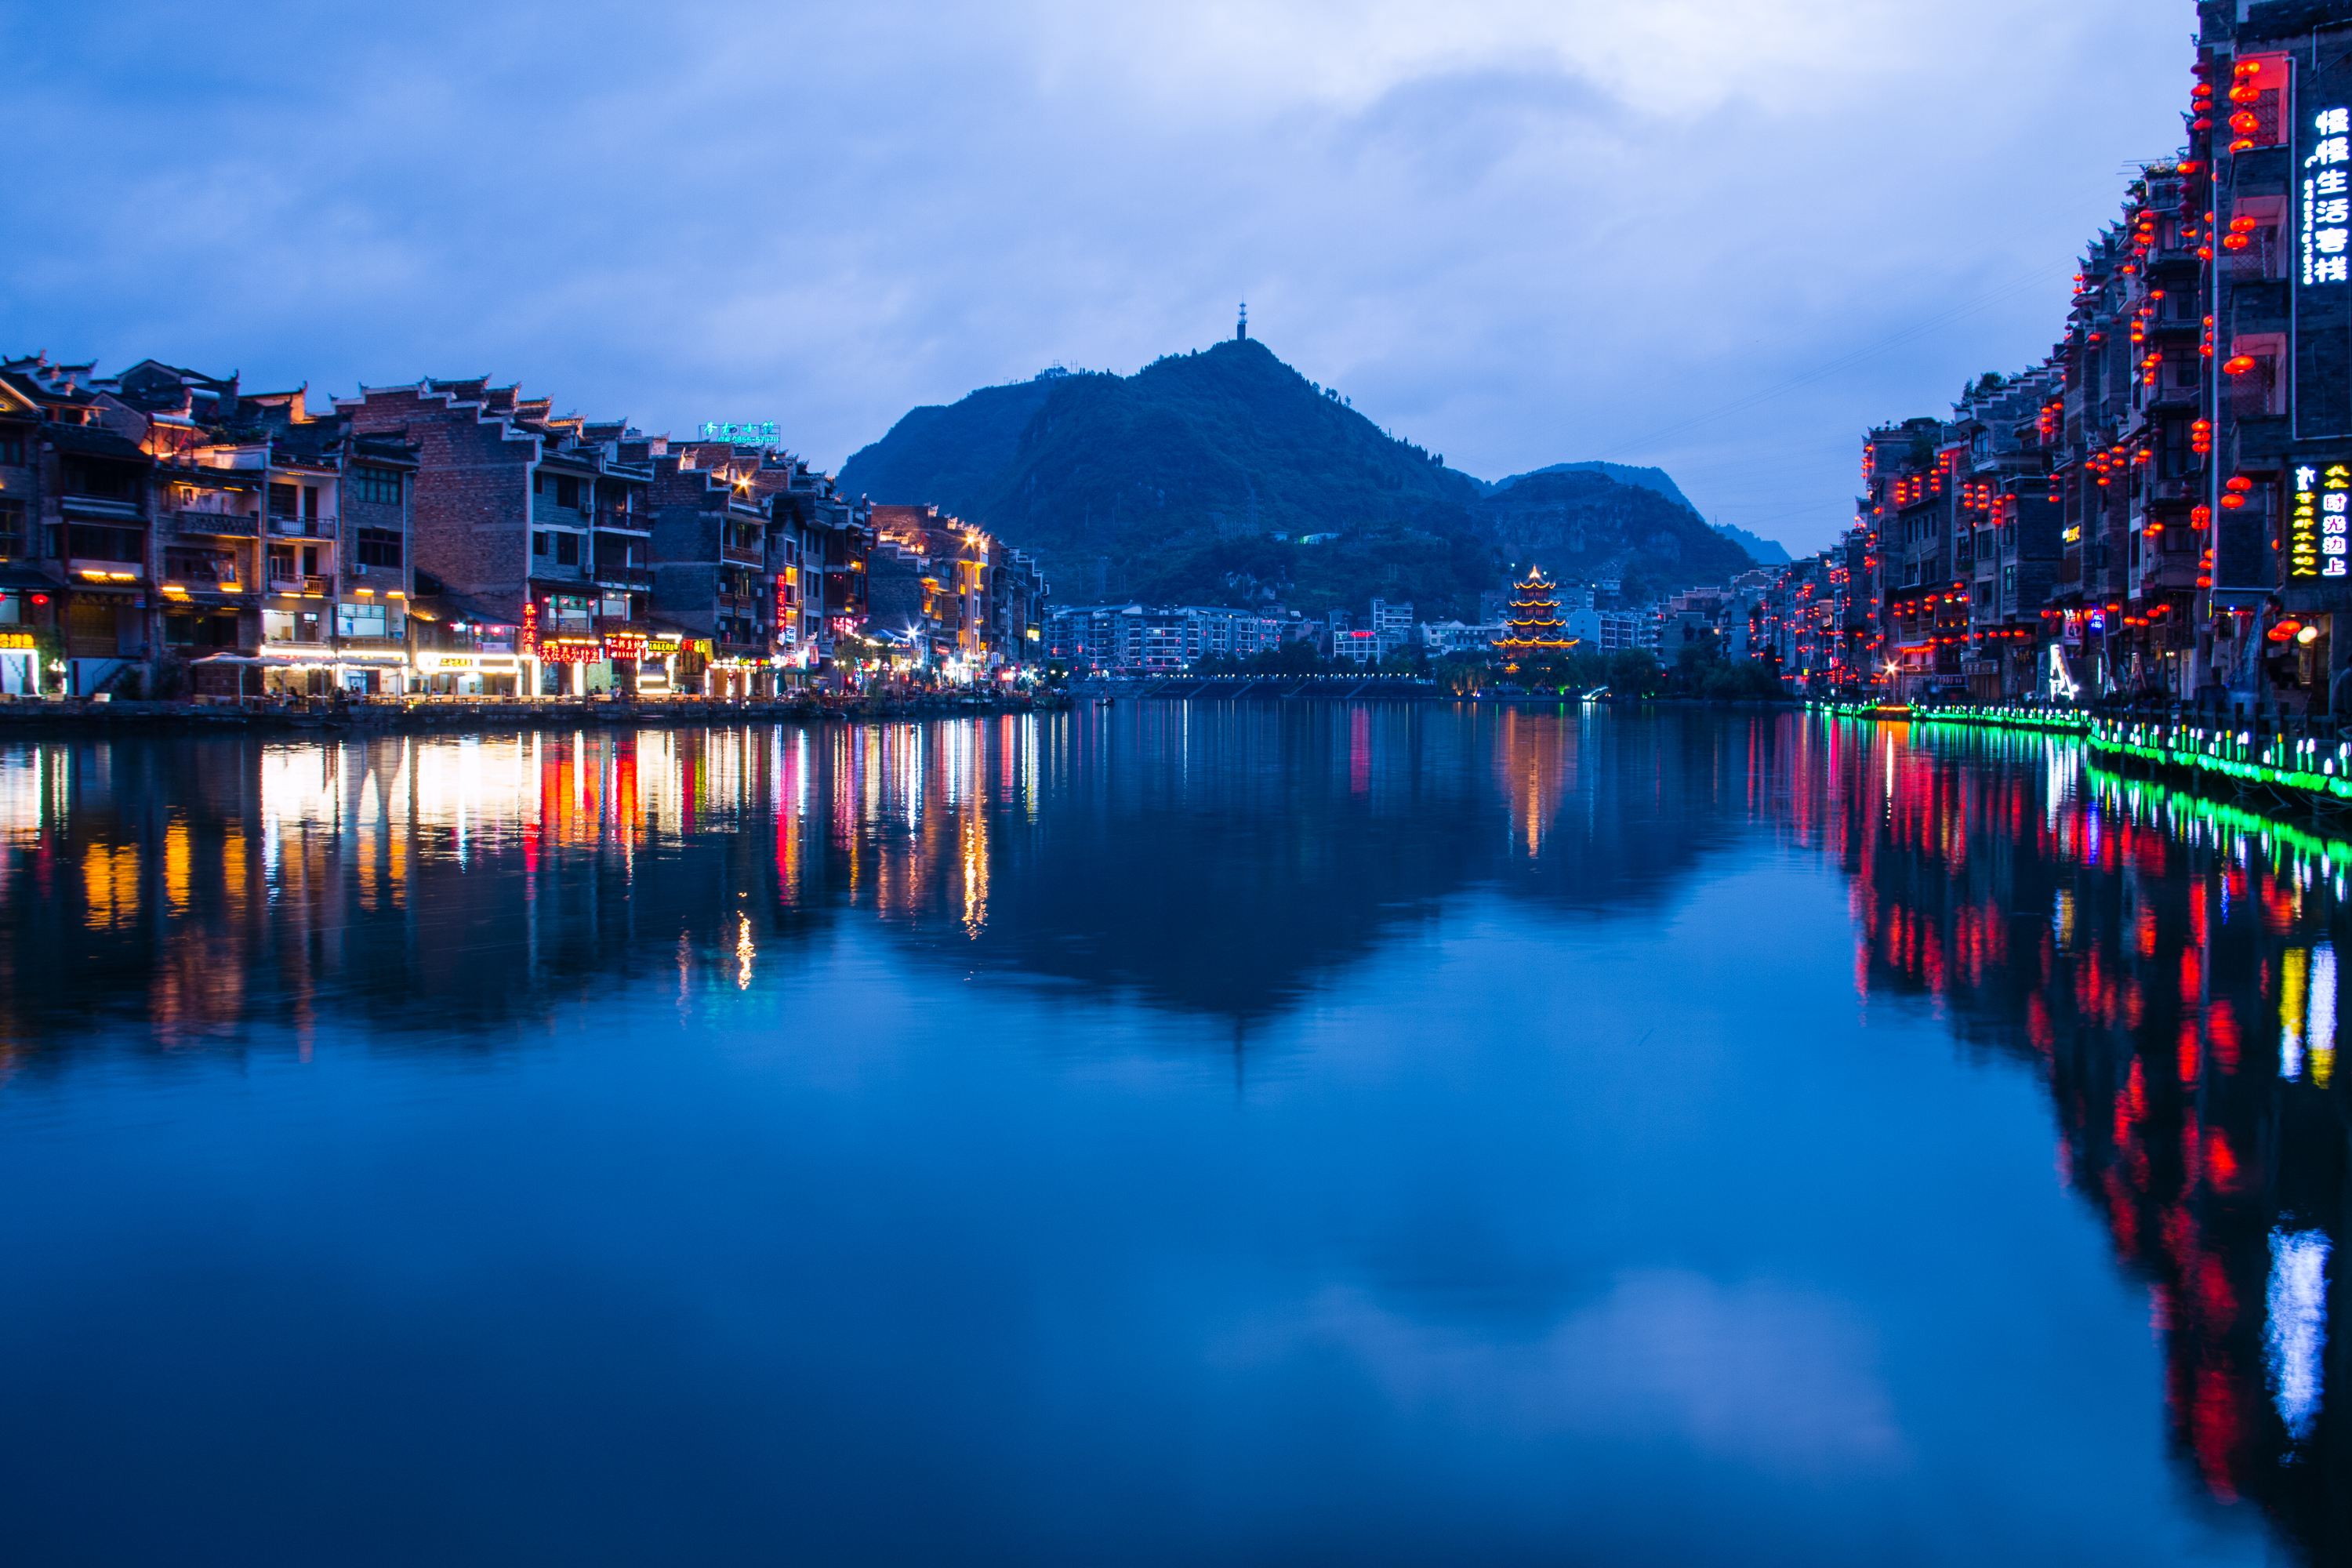 穿越千年,在中国最美古城镇远寻找乾隆念念不忘的白月光